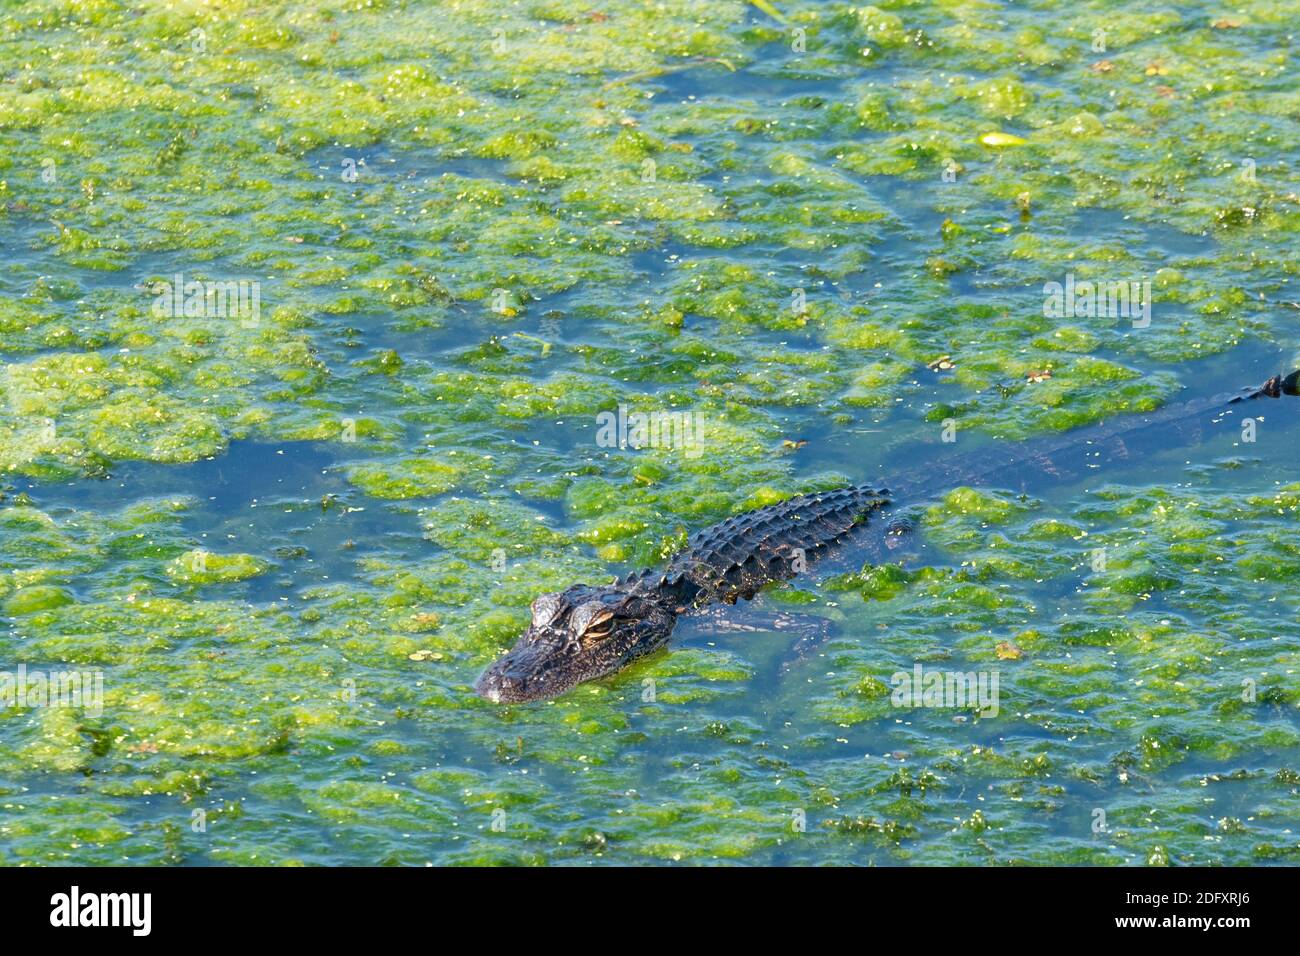 Alligator de Floride parmi les algues vertes le long du bord du lac Apopka à Winter Garden dans le comté d'Orange, en Floride. (ÉTATS-UNIS) Banque D'Images